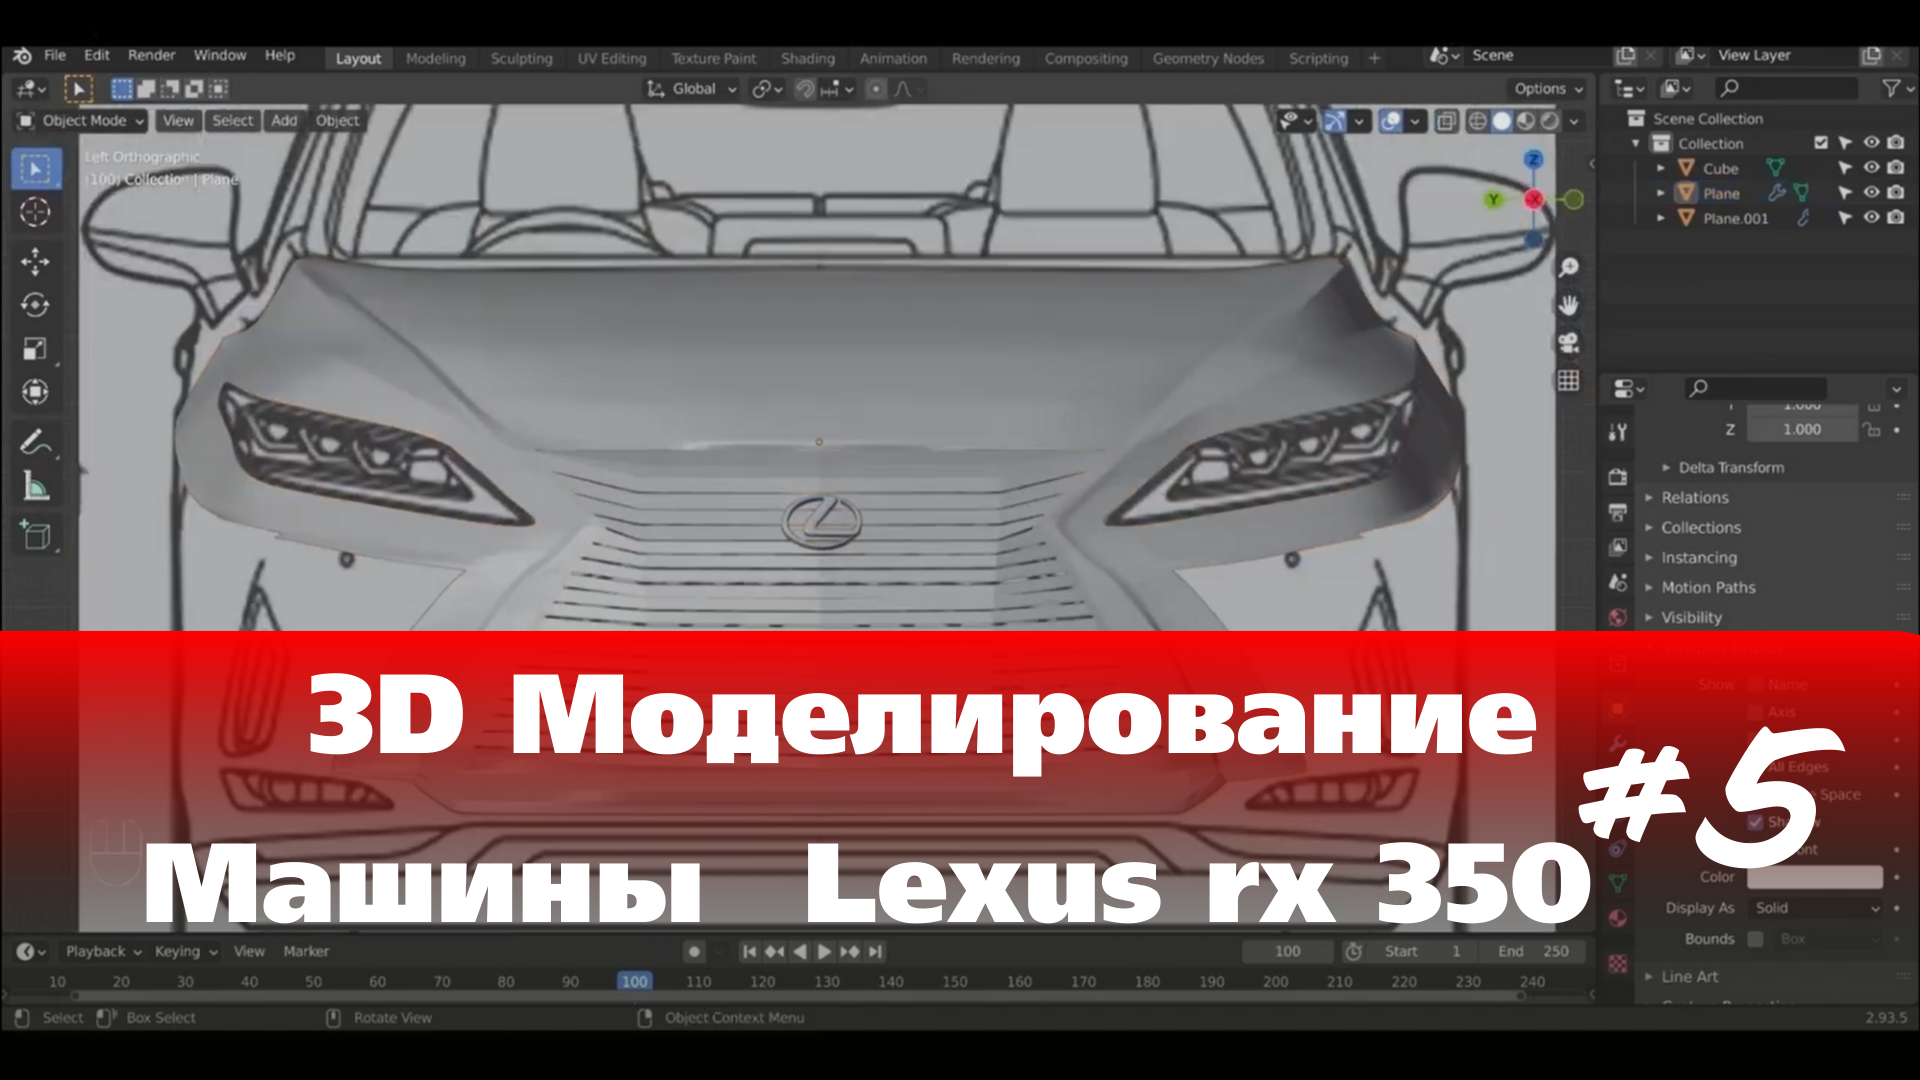 3D Моделирование Машины в Blender  - Lexus rx 350  часть 5 #Blender